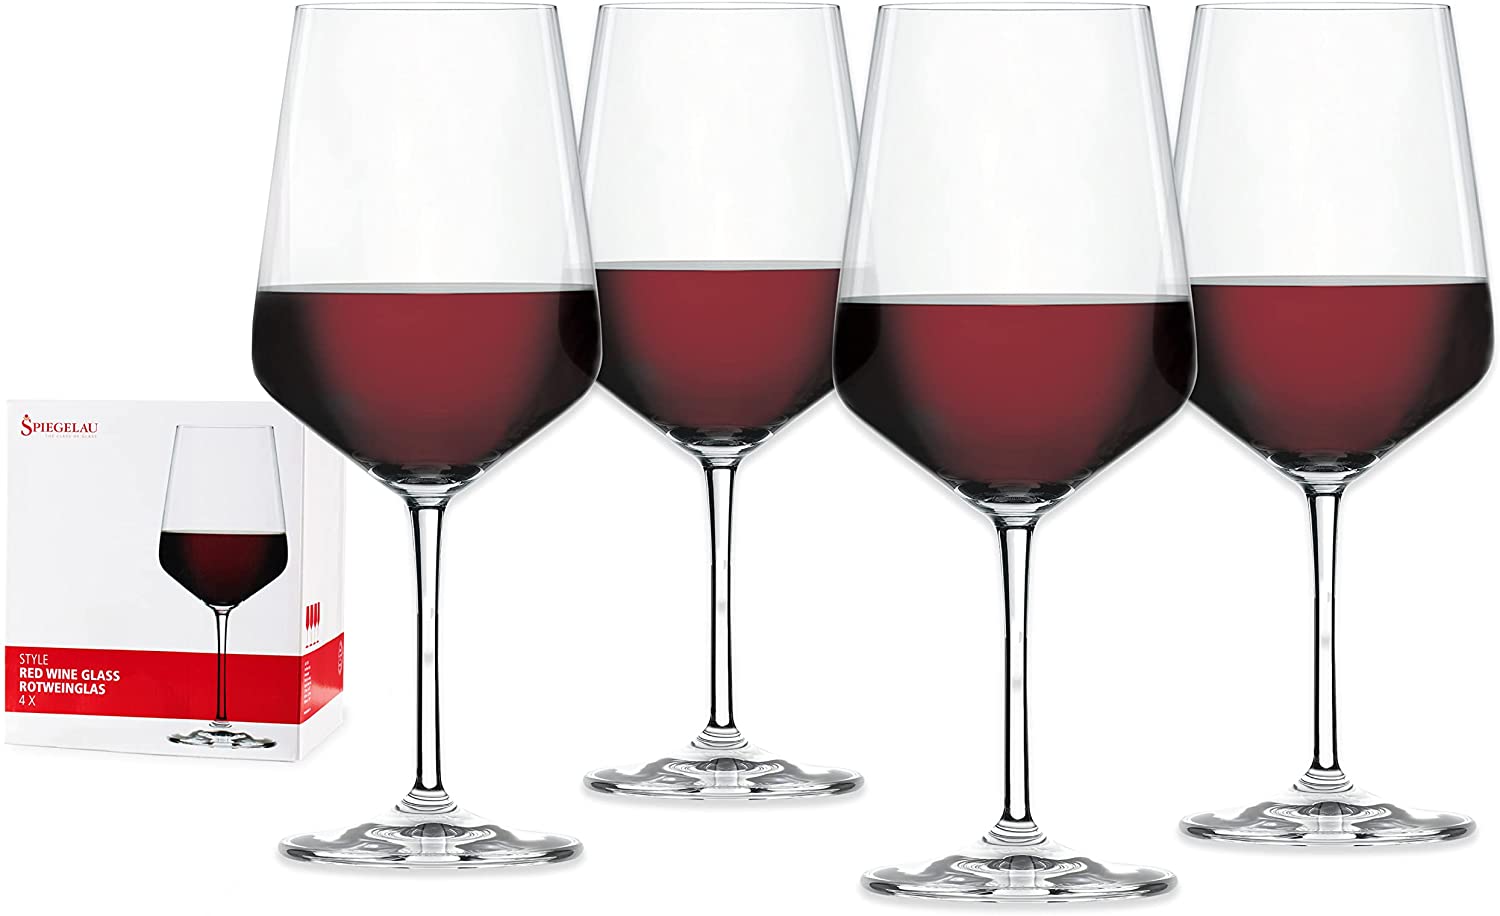 https://thekitchennook.com/wp-content/uploads/2022/04/Spiegelau-Red-Wine-Glass.jpg